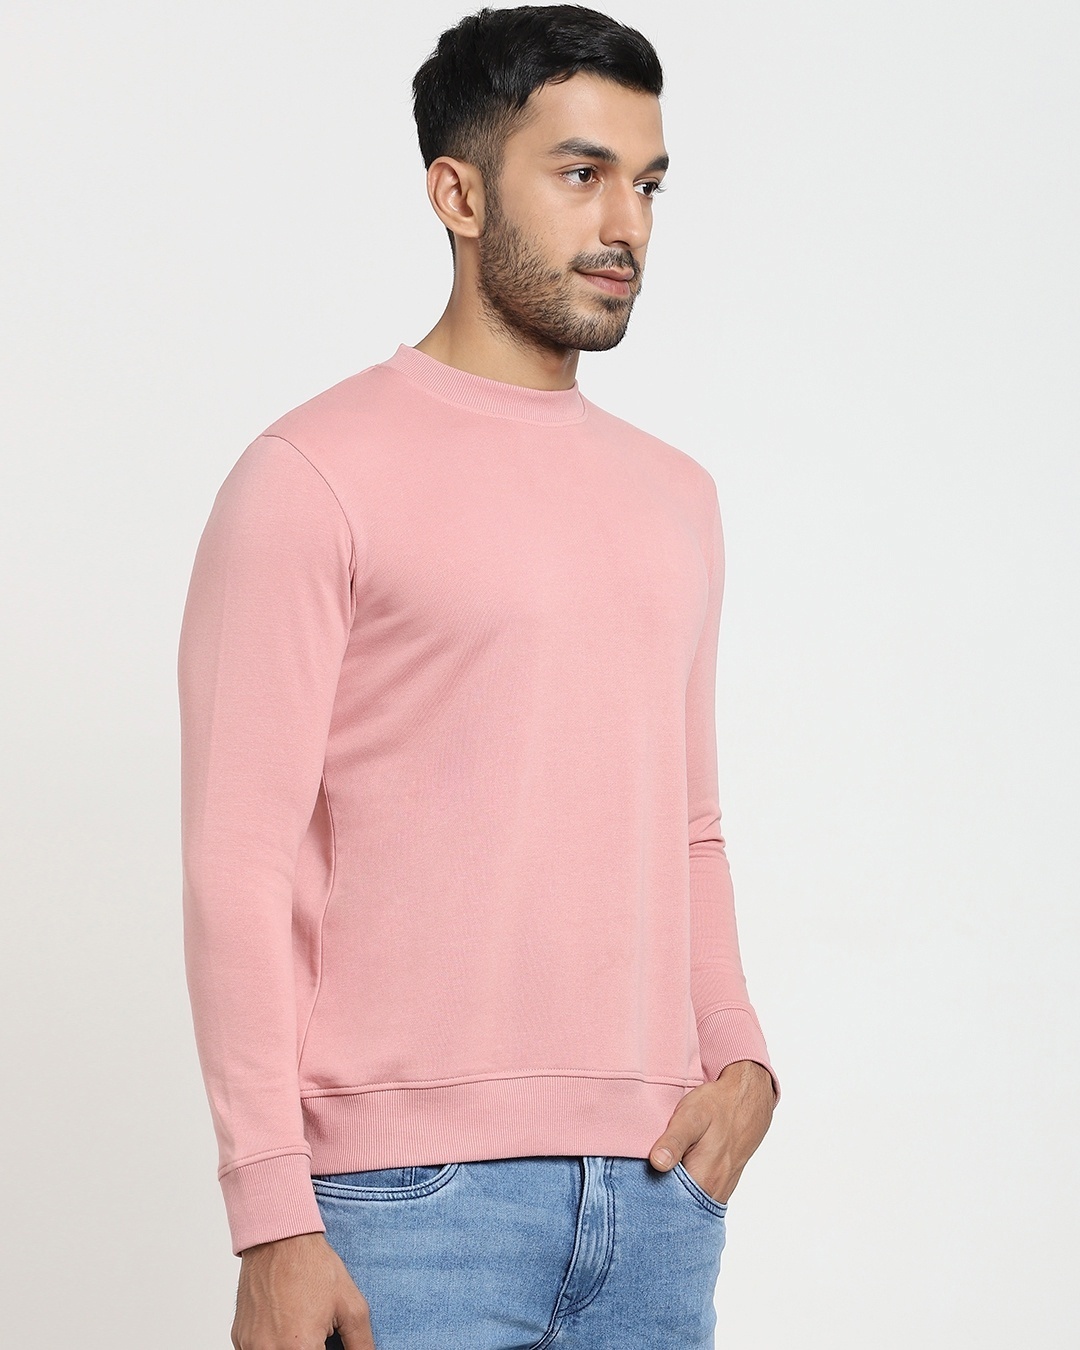 Shop Men's Pink Crew Neck Sweatshirt-Design